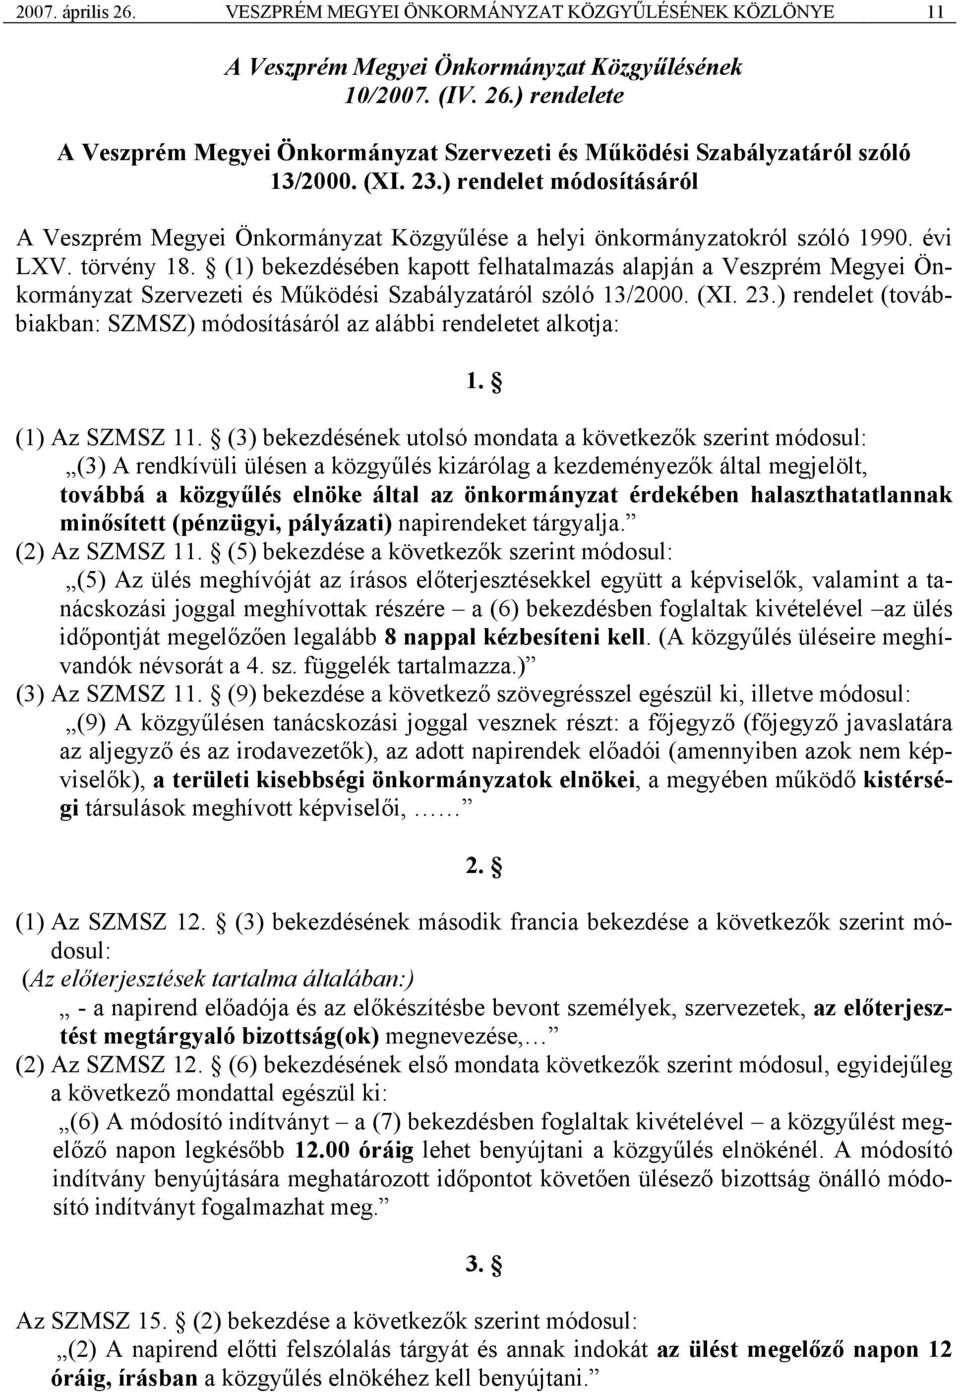 (1) bekezdésében kapott felhatalmazás alapján a Veszprém Megyei Önkormányzat Szervezeti és Működési Szabályzatáról szóló 13/2000. (XI. 23.